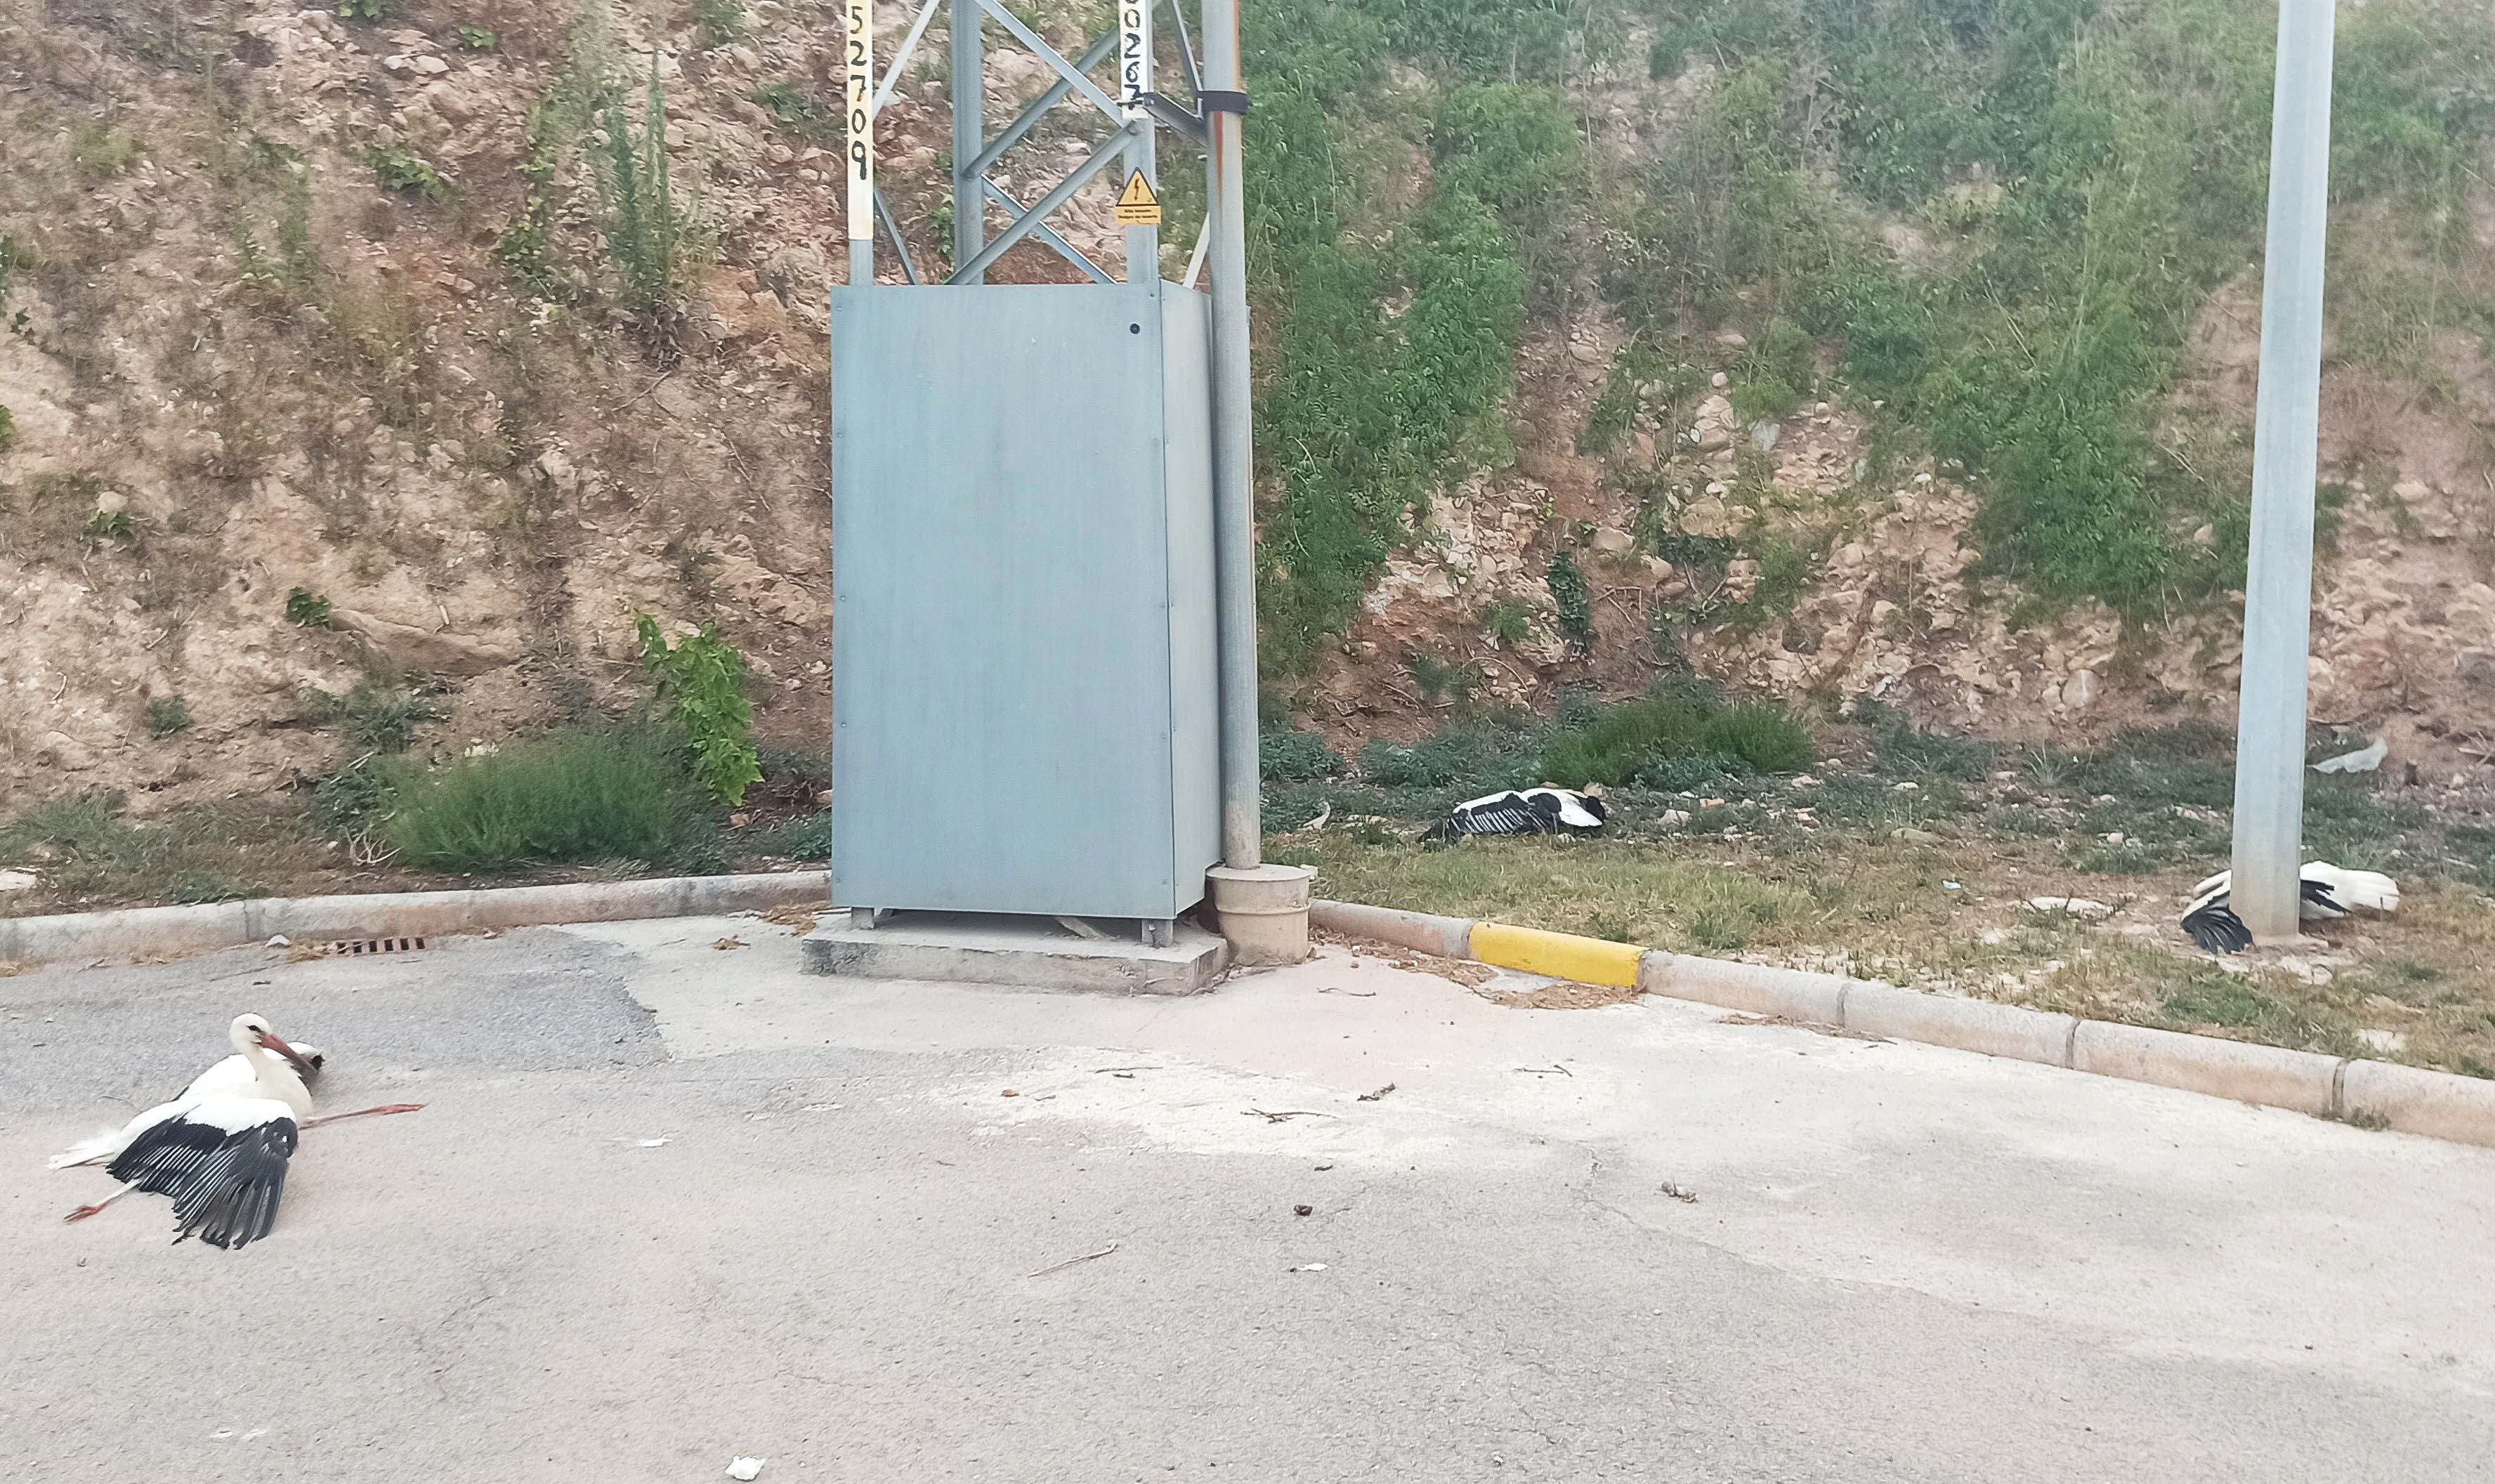 Tres cigüeñas halladas en agosto de 2020 junto a un poste de un tendido eléctrico valenciano sin elementos de protección, con síntomas de haber sufrido una electrocución. Imagen: SOV